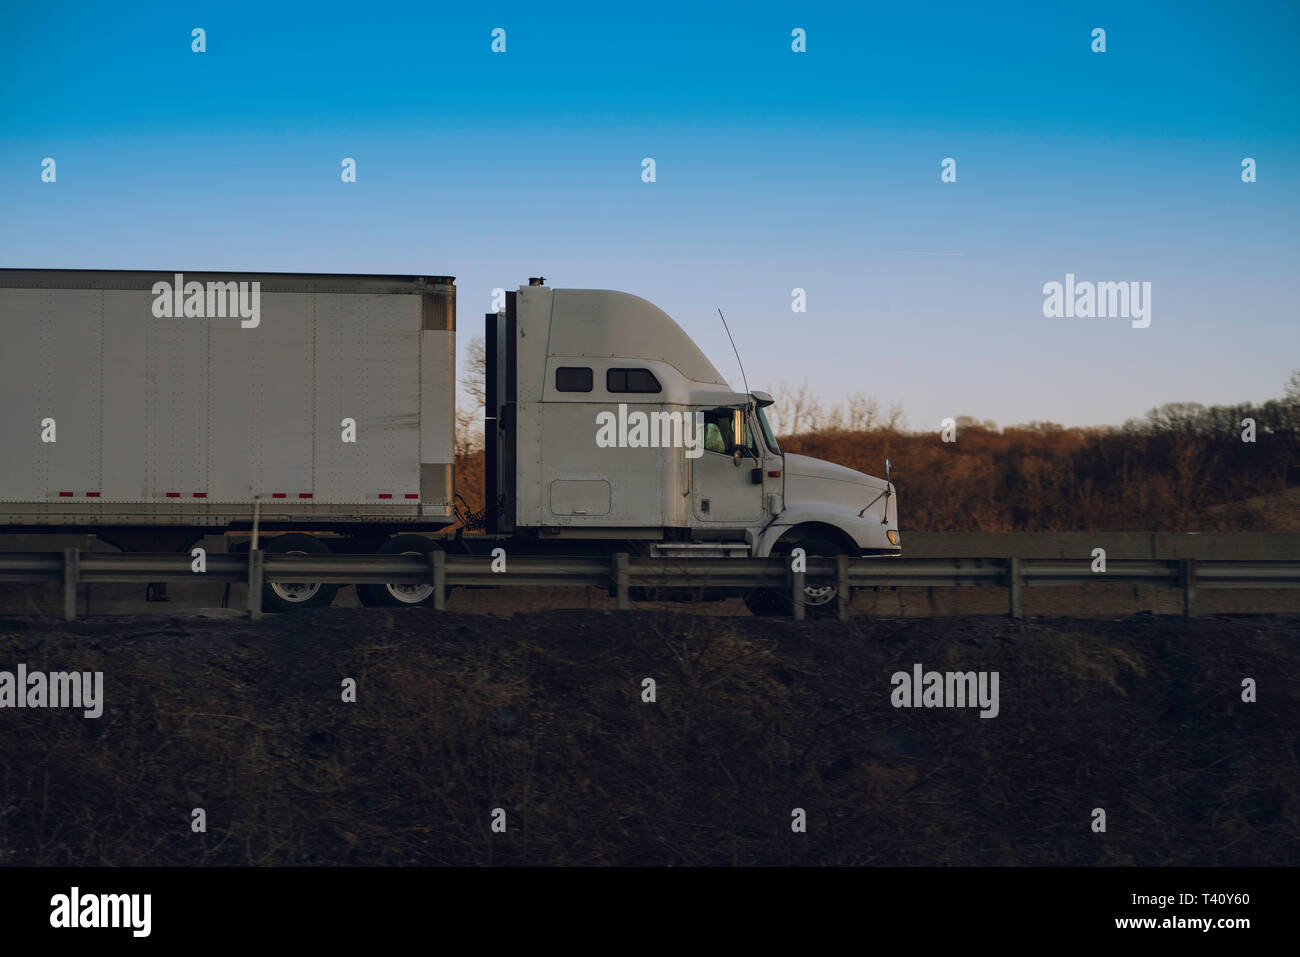 Semi truck 18 wheeler on highway Stock Photo